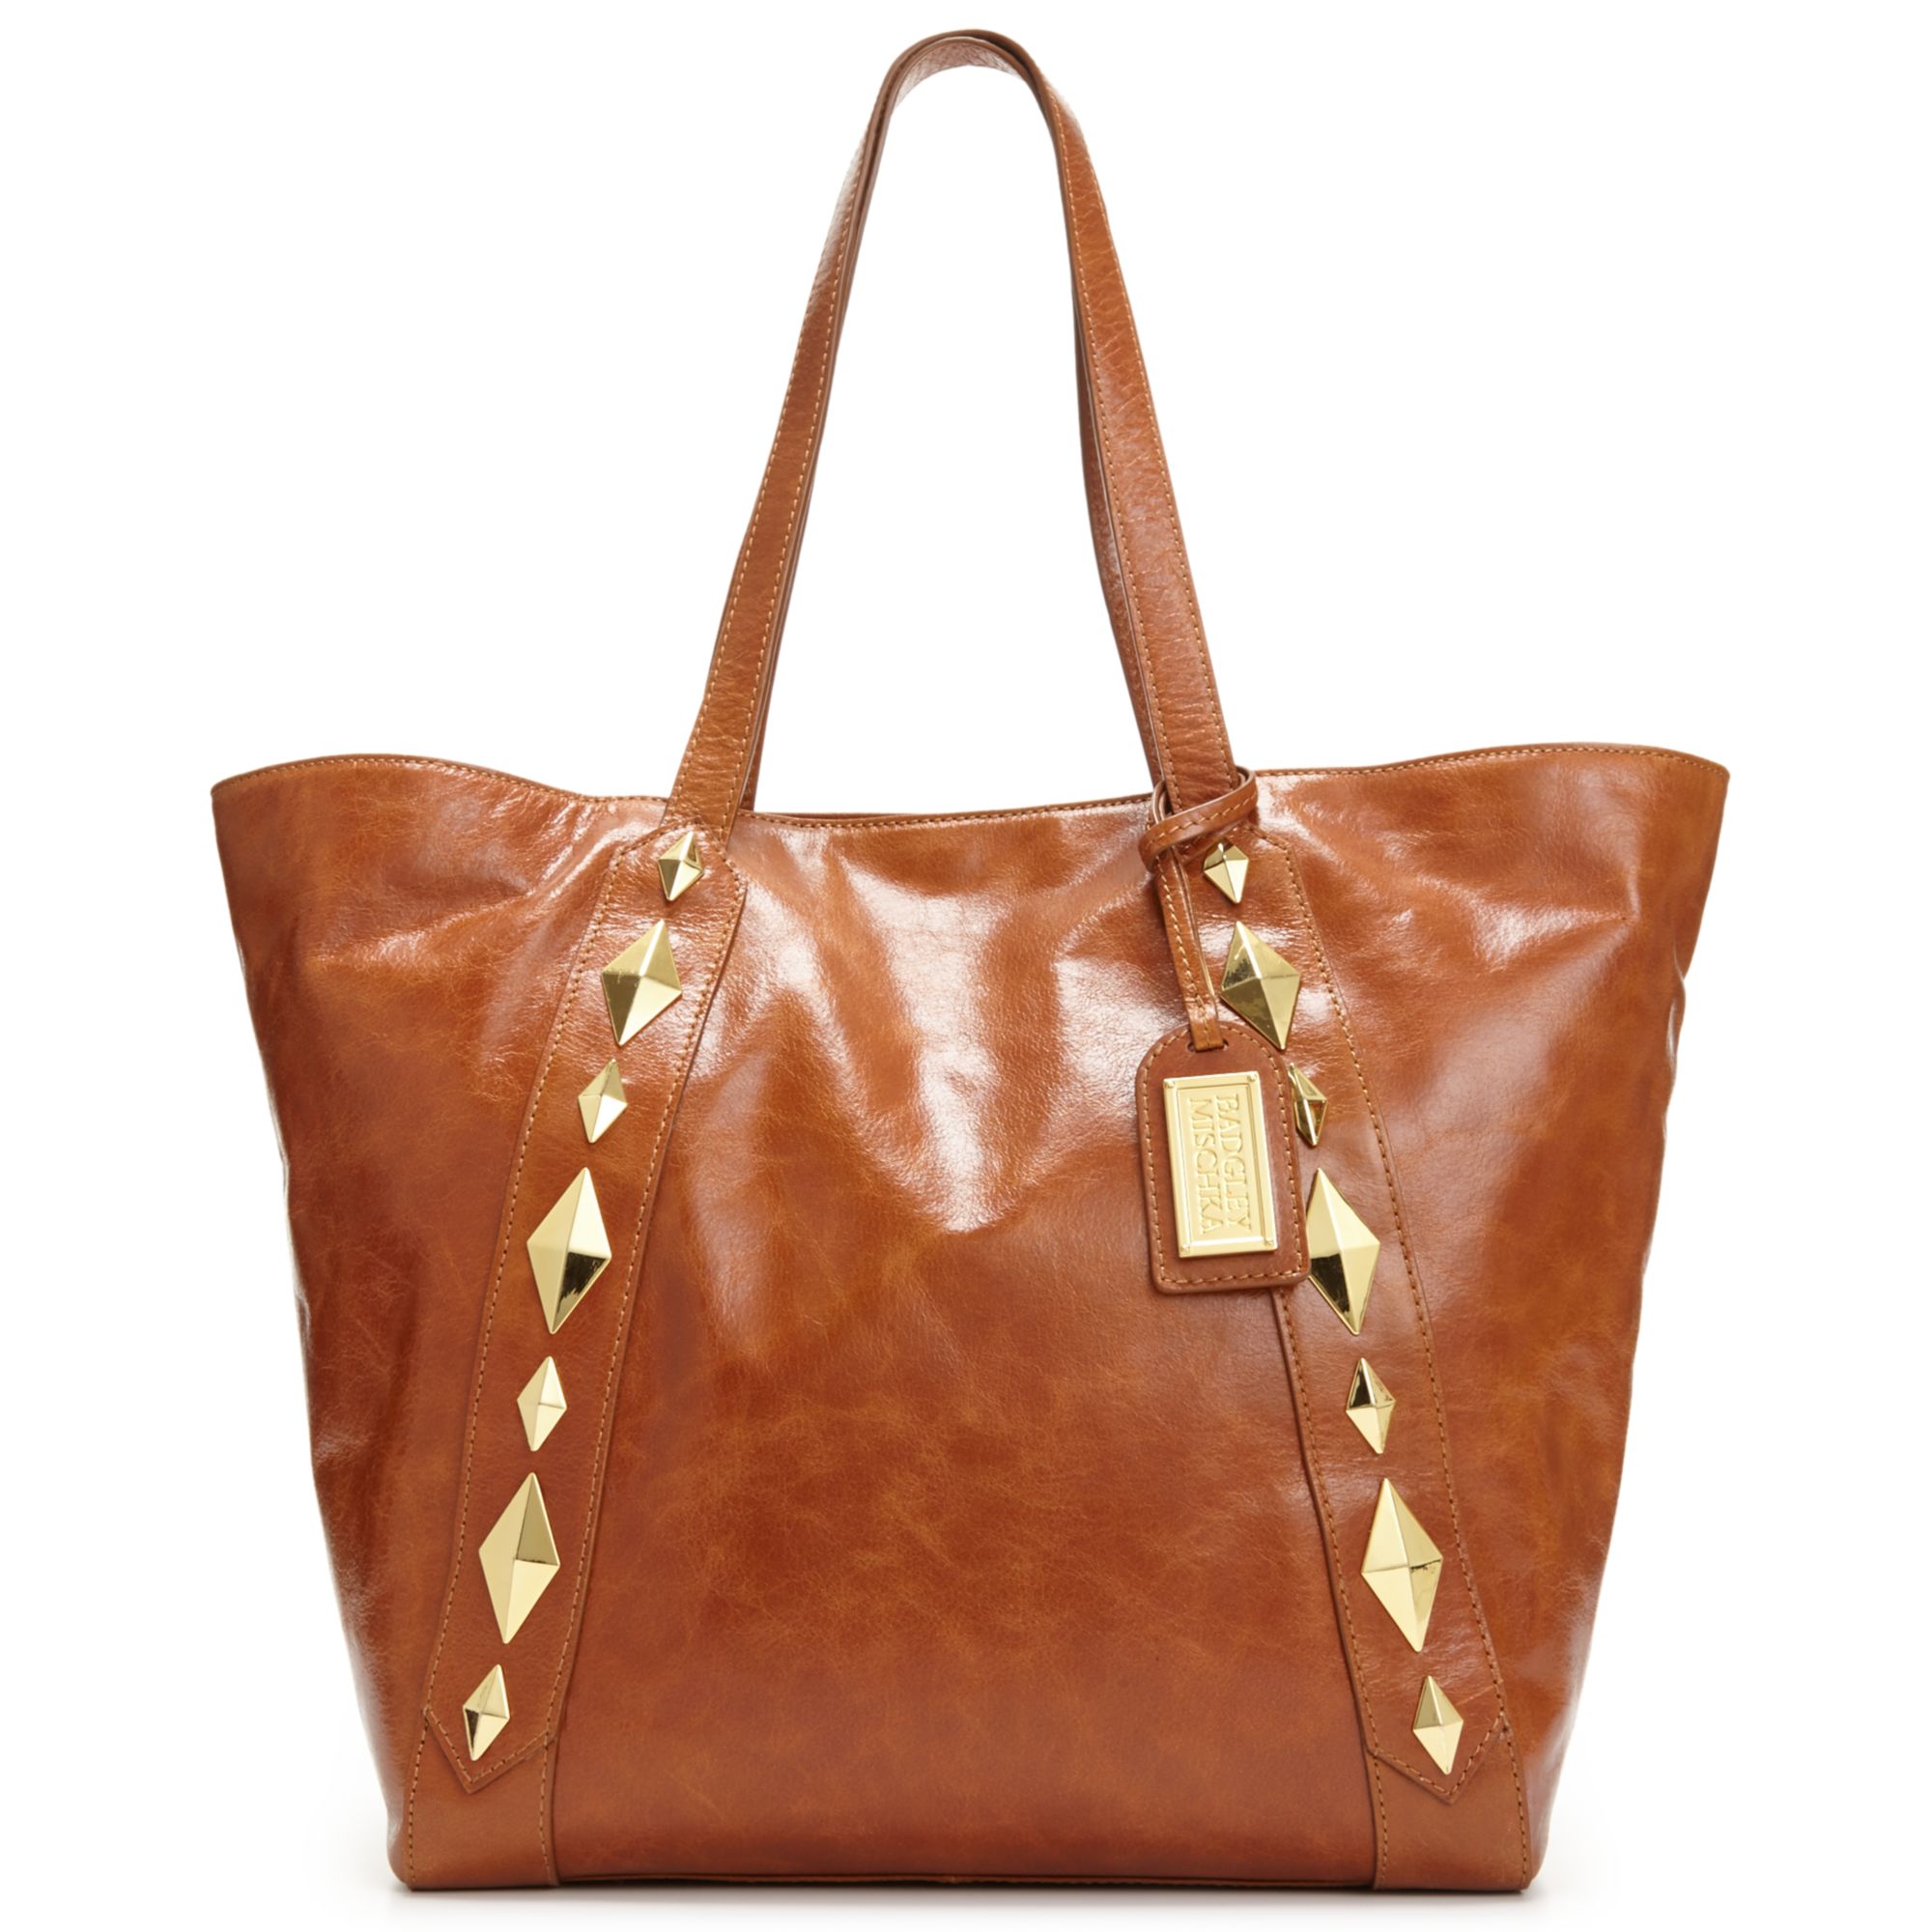 Badgley Mischka Bag in Brown (Cognac) | Lyst